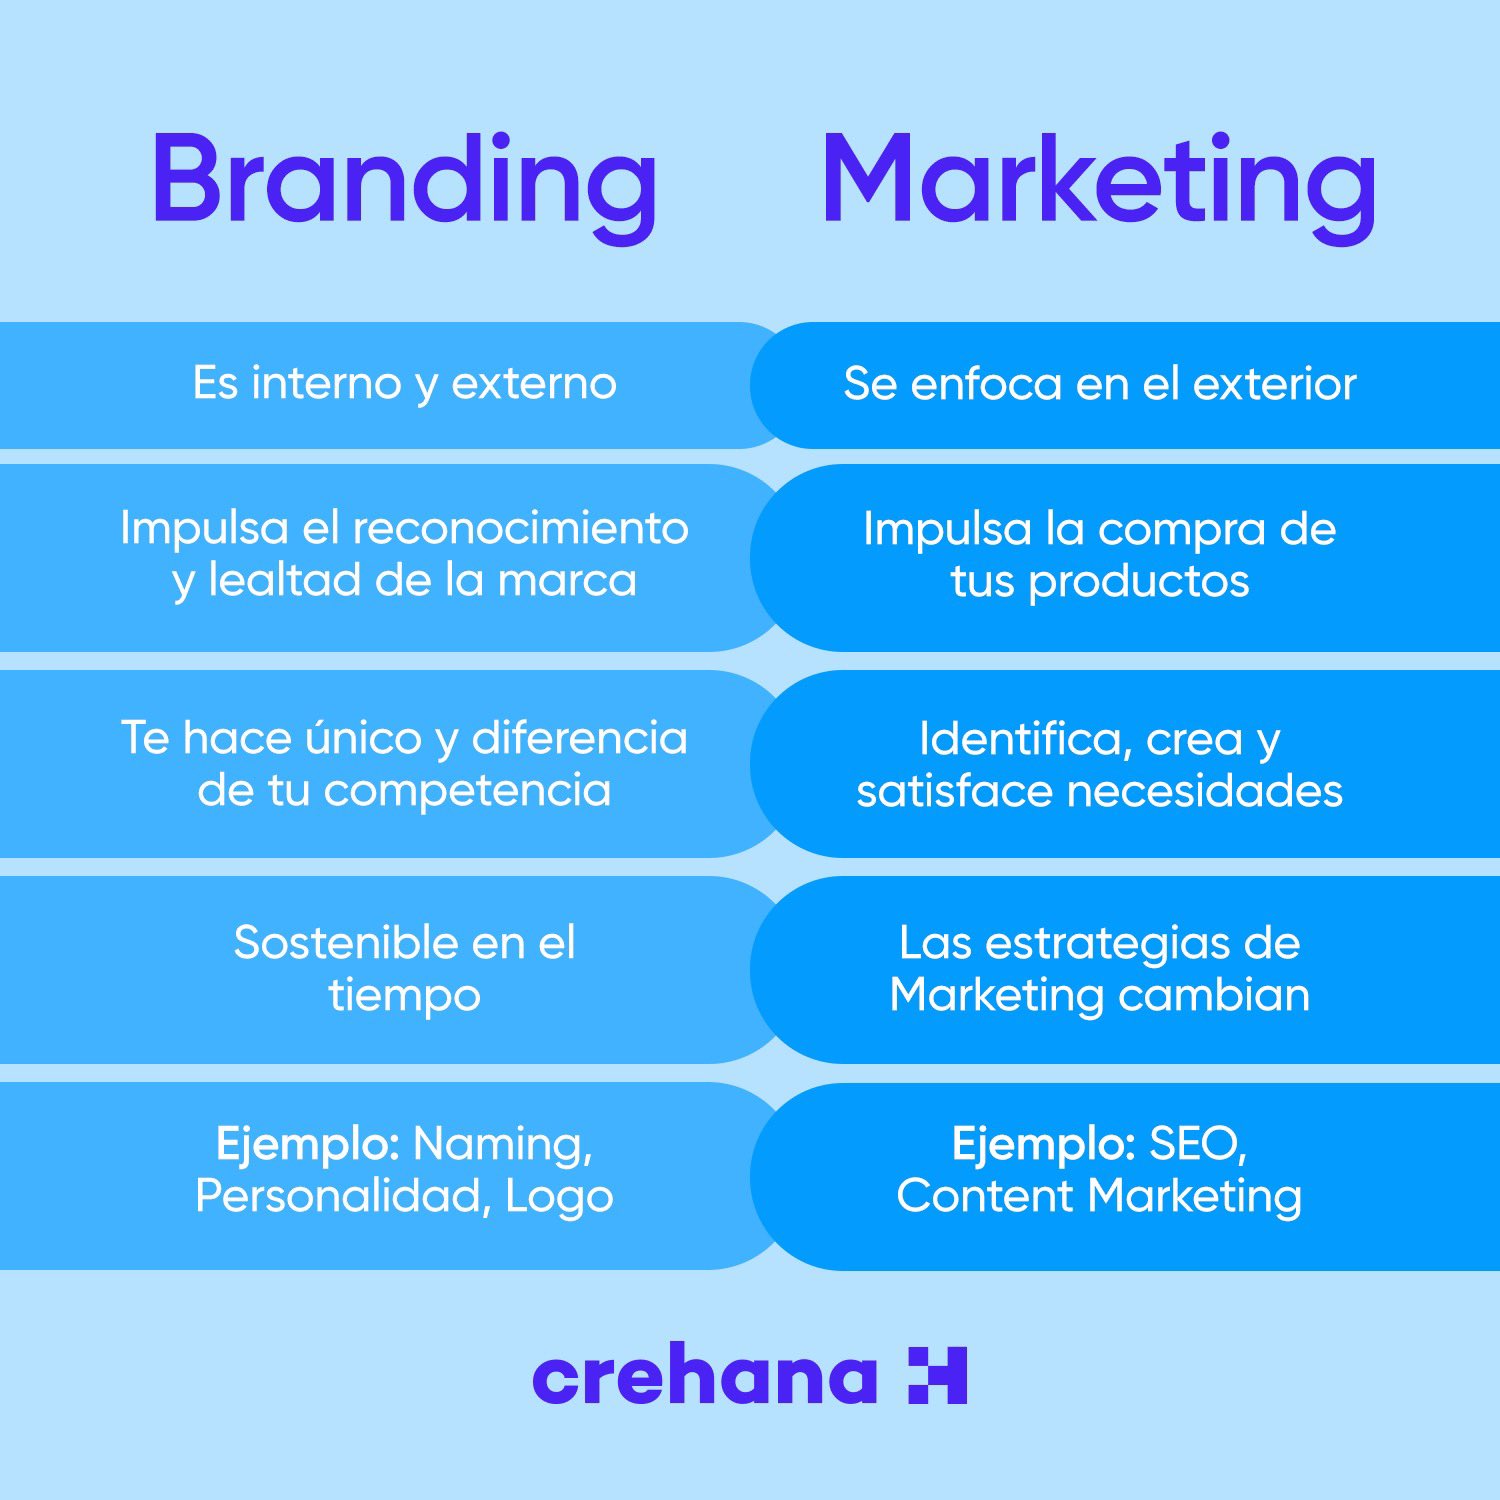 Crehana on X: El Branding y el Marketing son dos conceptos que